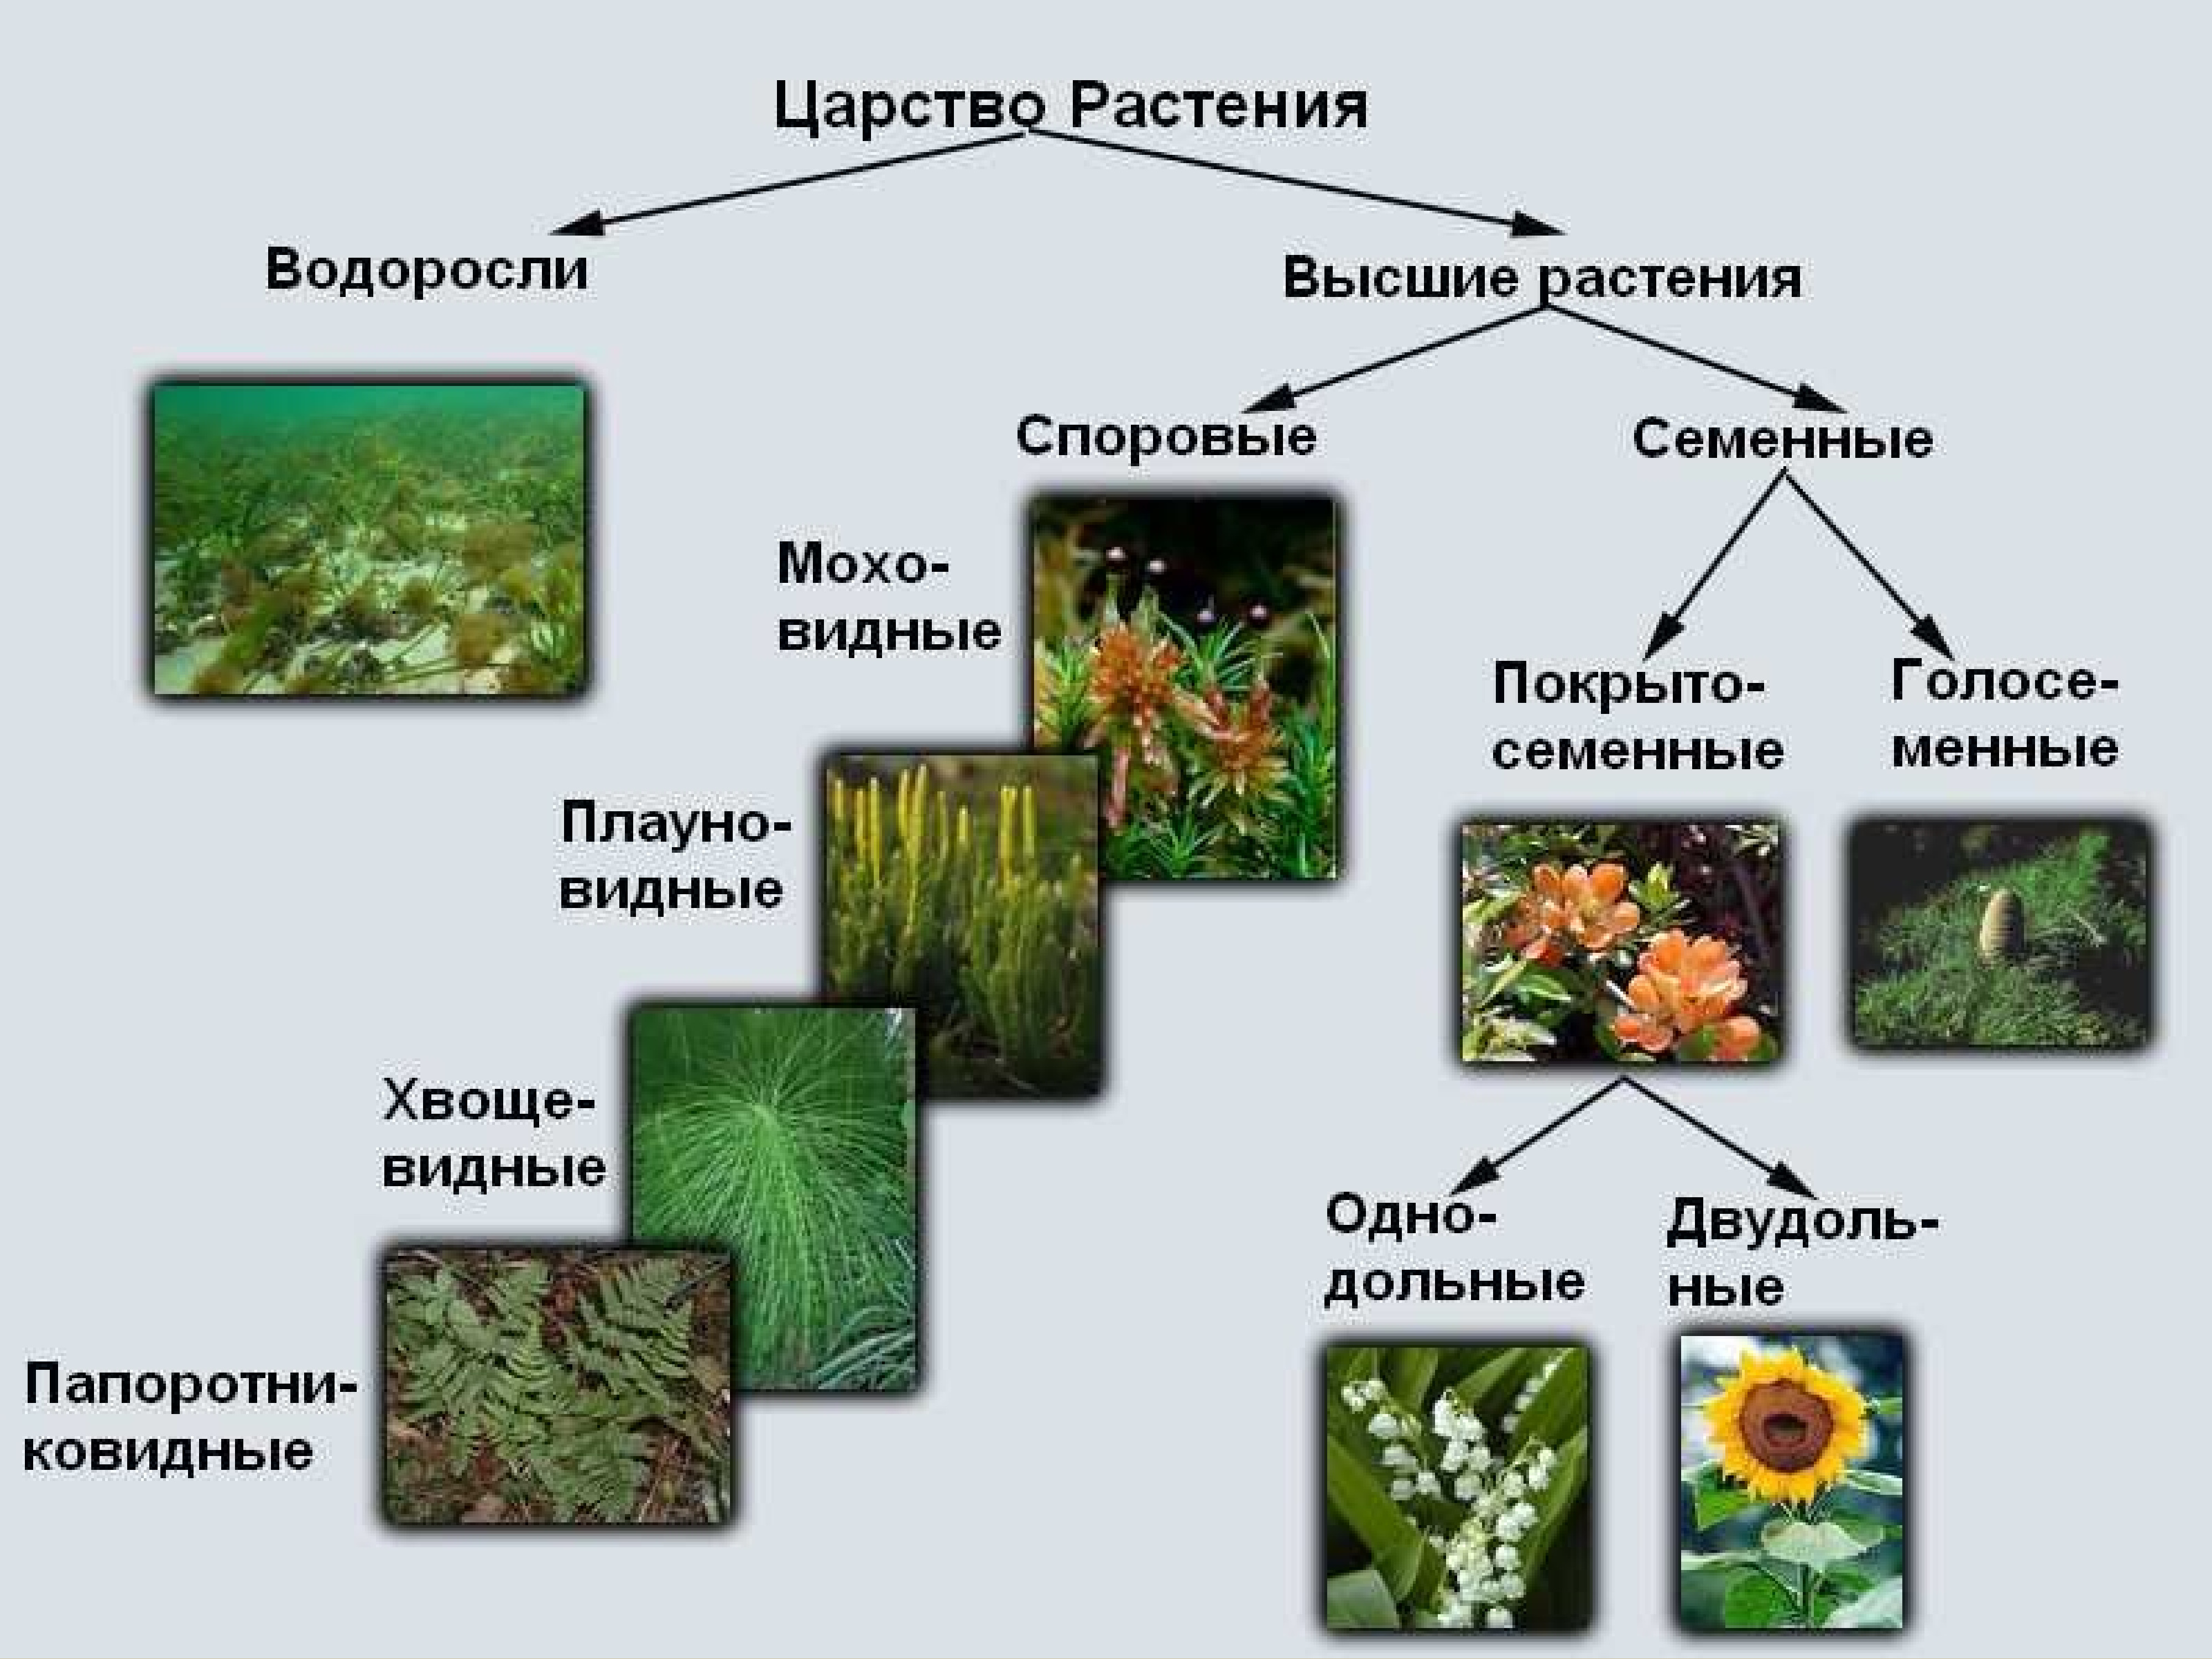 Представители царства растений 5 класс биология